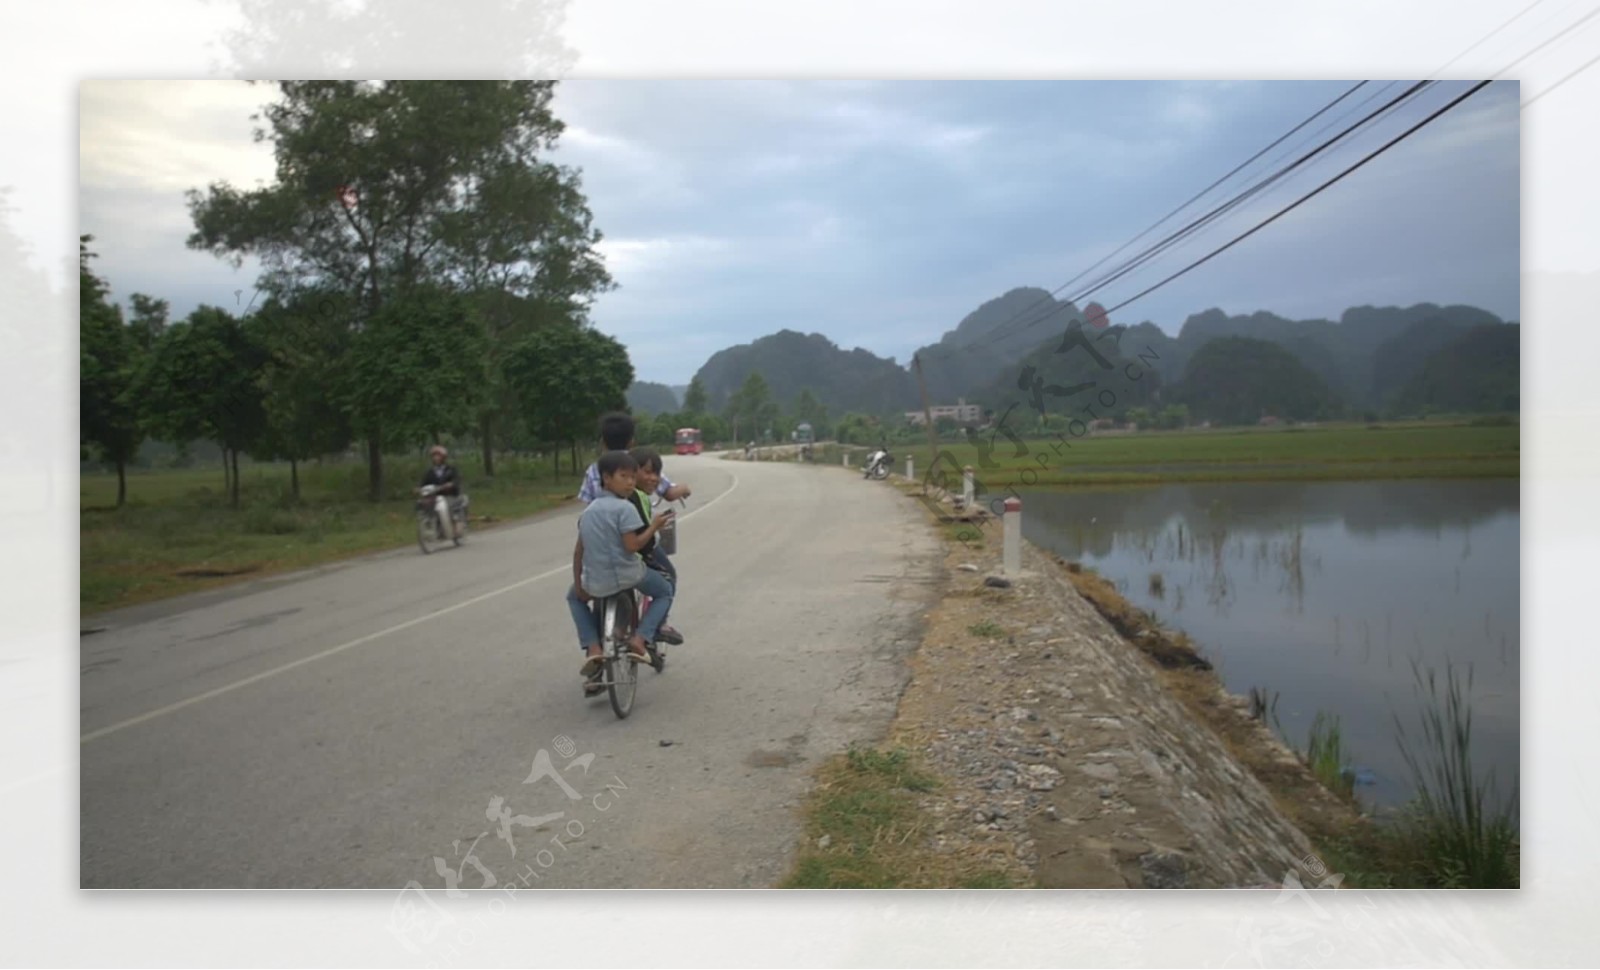 越南儿童骑自行车